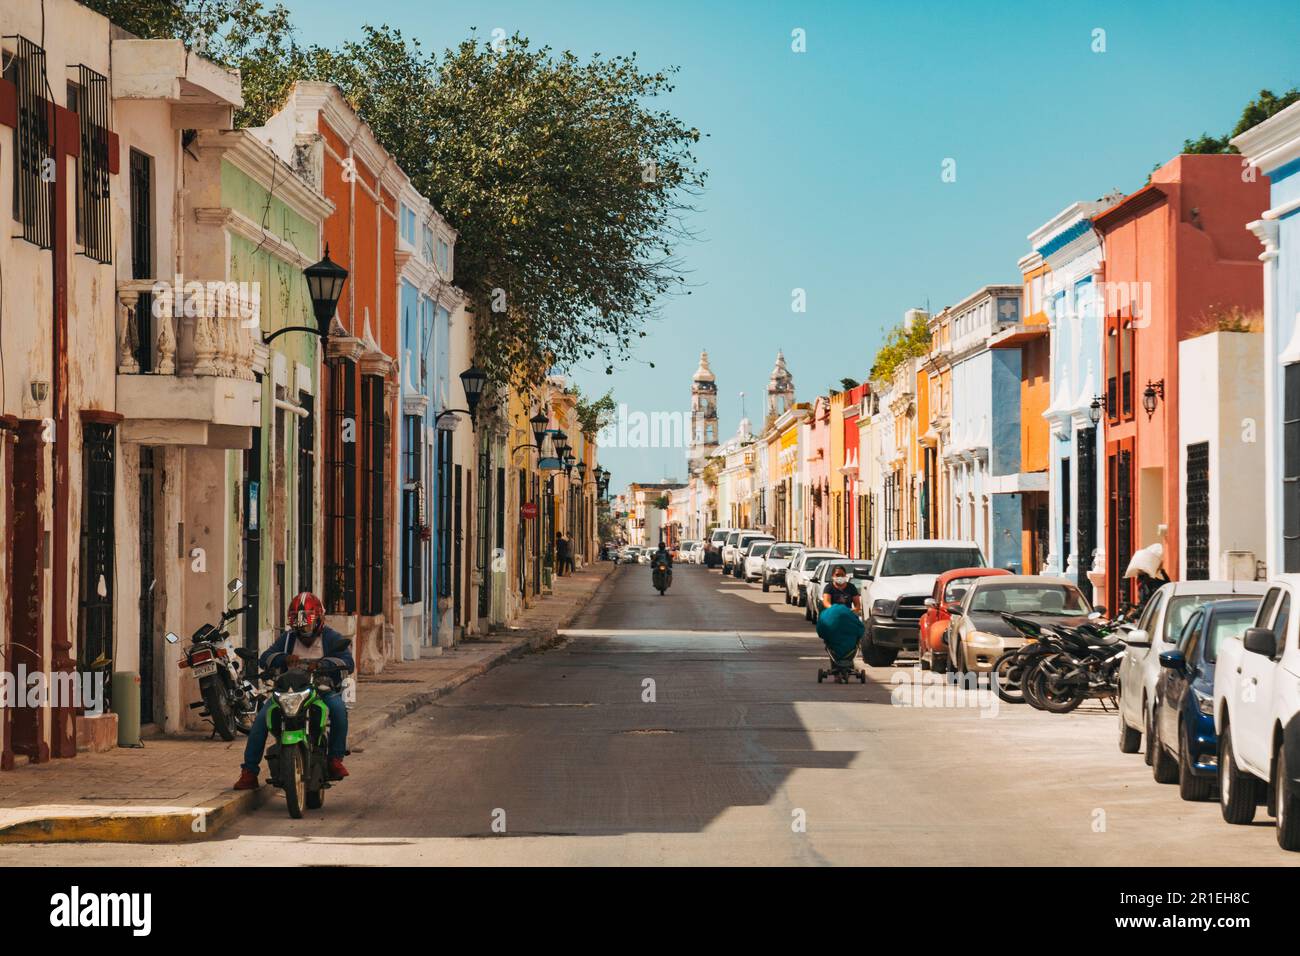 Bâtiments coloniaux espagnols peints dans diverses couleurs vives dans le centre historique de la ville de Campeche, au Mexique Banque D'Images